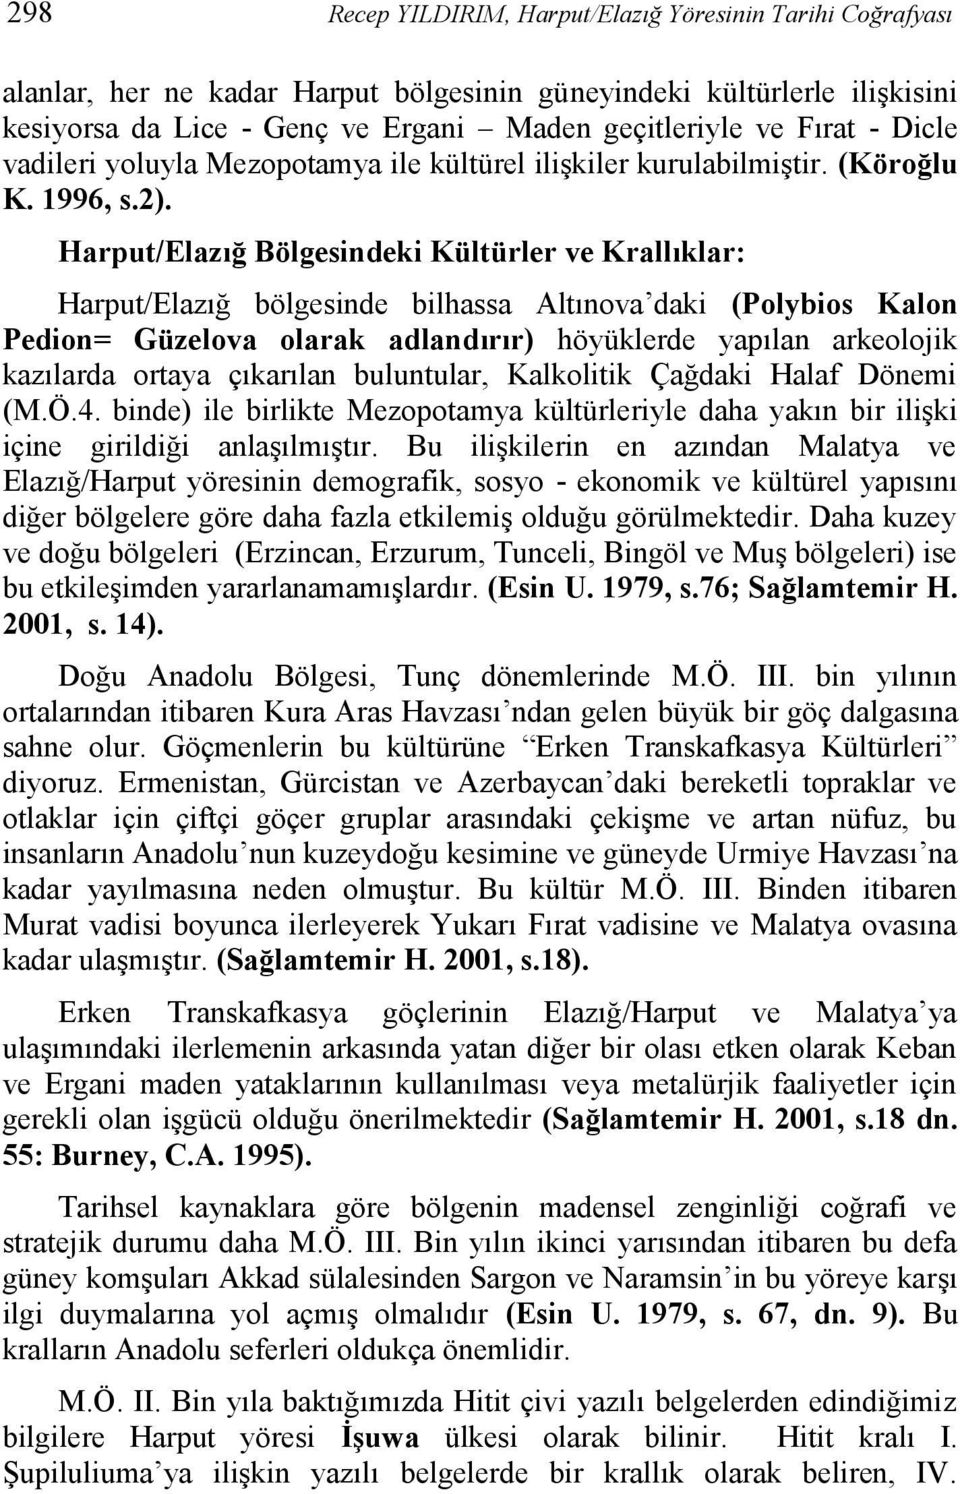 Harput/Elazığ Bölgesindeki Kültürler ve Krallıklar: Harput/Elazığ bölgesinde bilhassa Altınova daki (Polybios Kalon Pedion= Güzelova olarak adlandırır) höyüklerde yapılan arkeolojik kazılarda ortaya